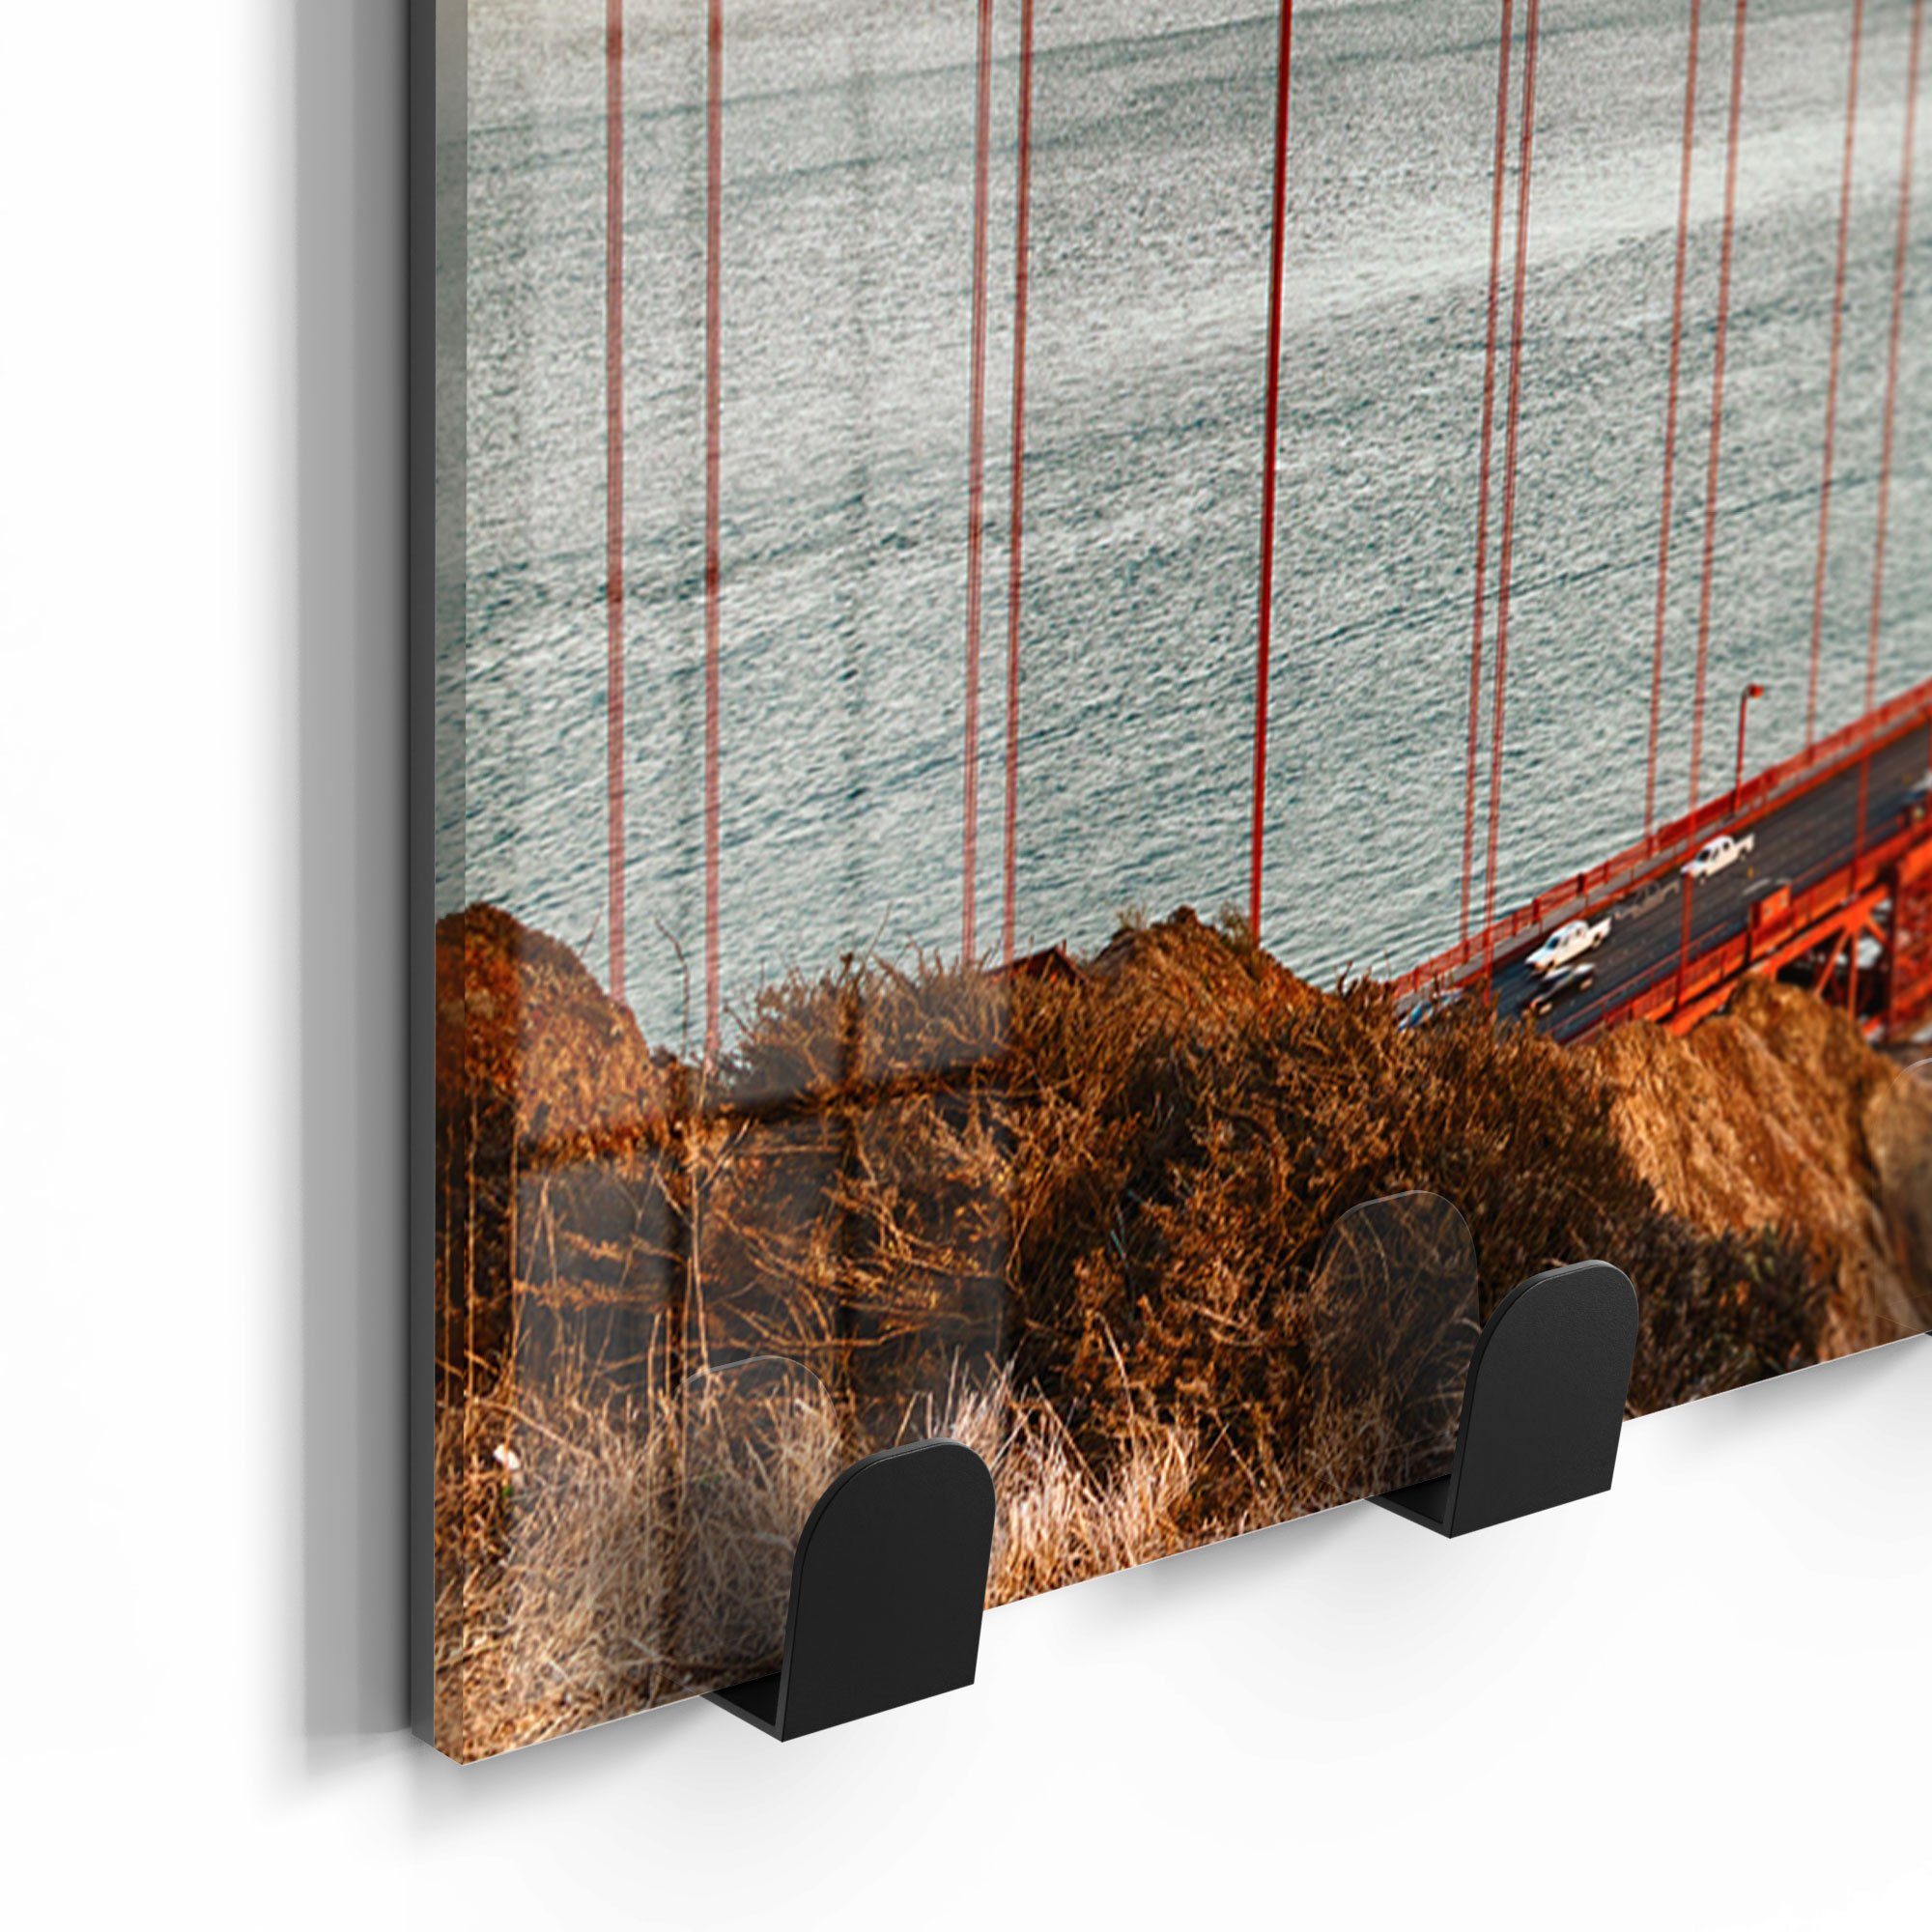 DEQORI Kleiderhaken 'Golden Gate Bridge', magnetisch Paneel Glas beschreibbar Garderobe